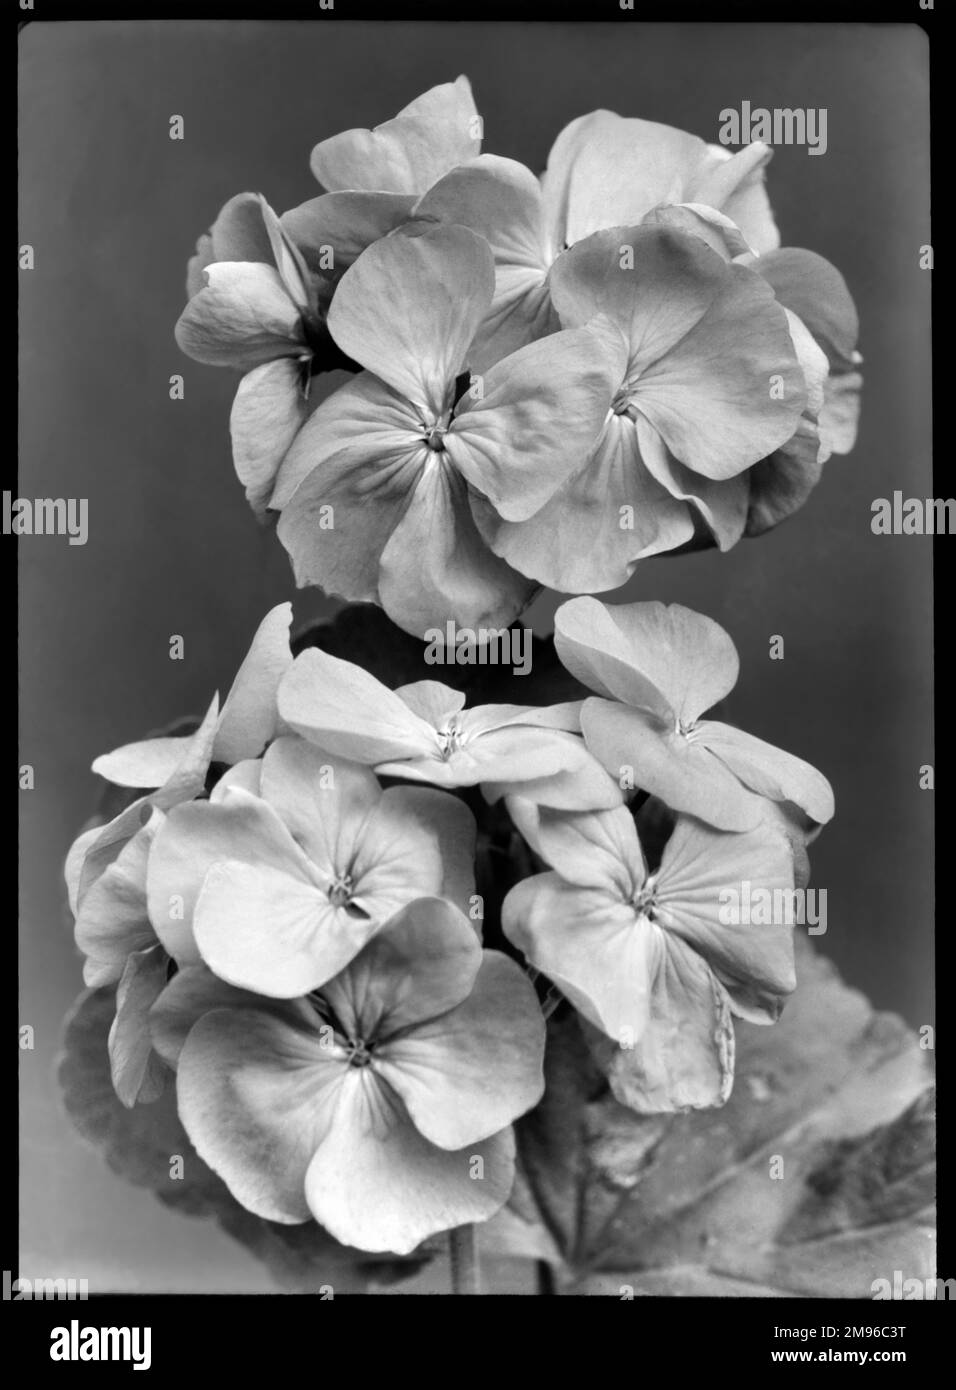 Pelargonium Sir Thomas Hanbury aus der Familie Geraniaceae, mit leuchtend orange-roten Blumen. Es ist benannt nach dem englischen Stoffhändler, Quaker Philanthrop und Pflanzenliebhaber, der in Wisley und in Italien Gärten gründete. Stockfoto